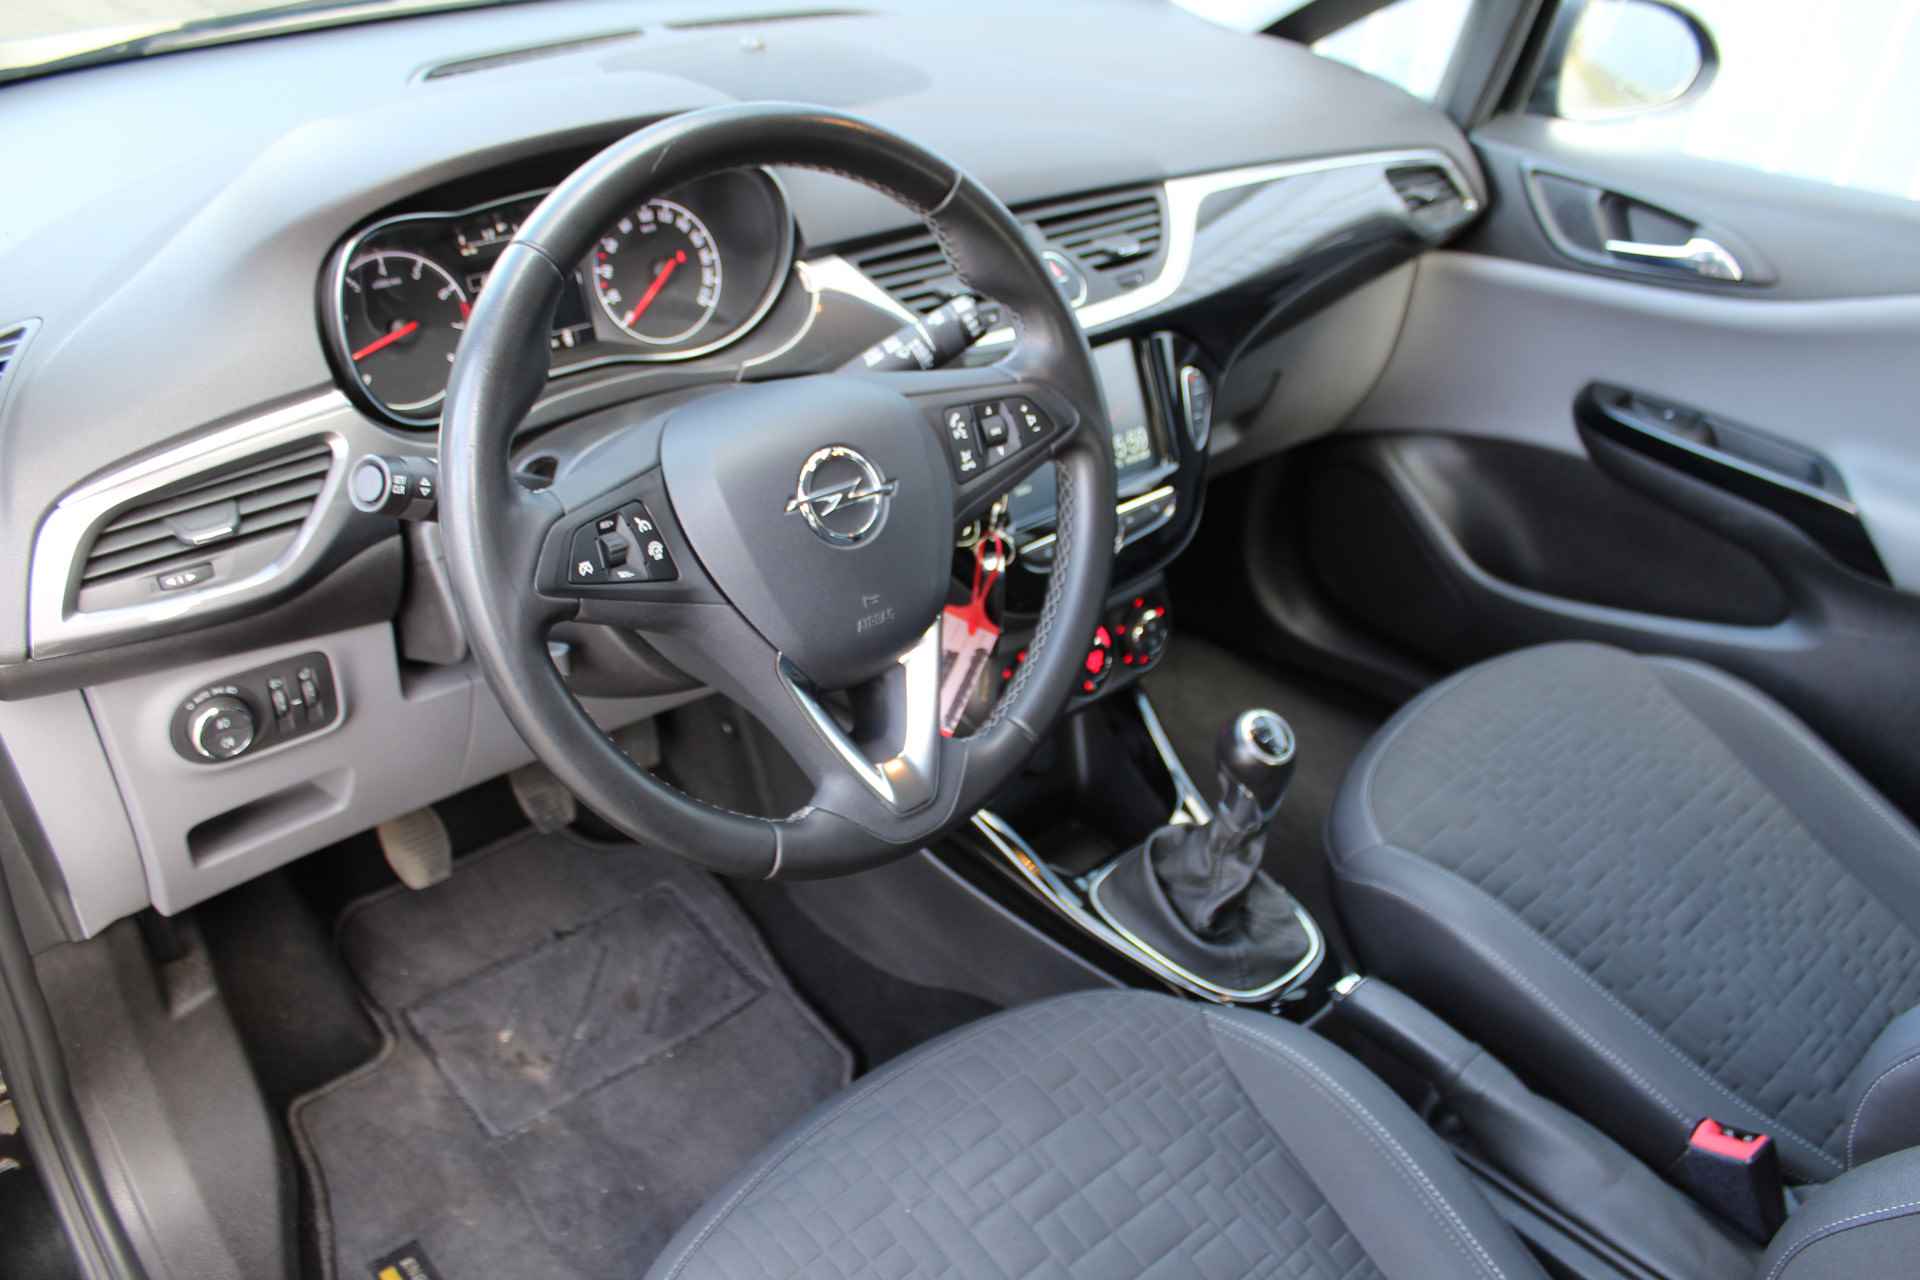 Opel Corsa 1.0-90pk Turbo 'Online Edition'. Erg nette en goed onderhouden Opel Corsa 1.0-90pk Turbo 5drs.. Volautm. airco, cruise control, navigatie, trekhaak afneembare kogel, metallic lak, parkeersensoren v+a, LM wielen, telefoonvoorb., 5 deuren etc. - 35/45